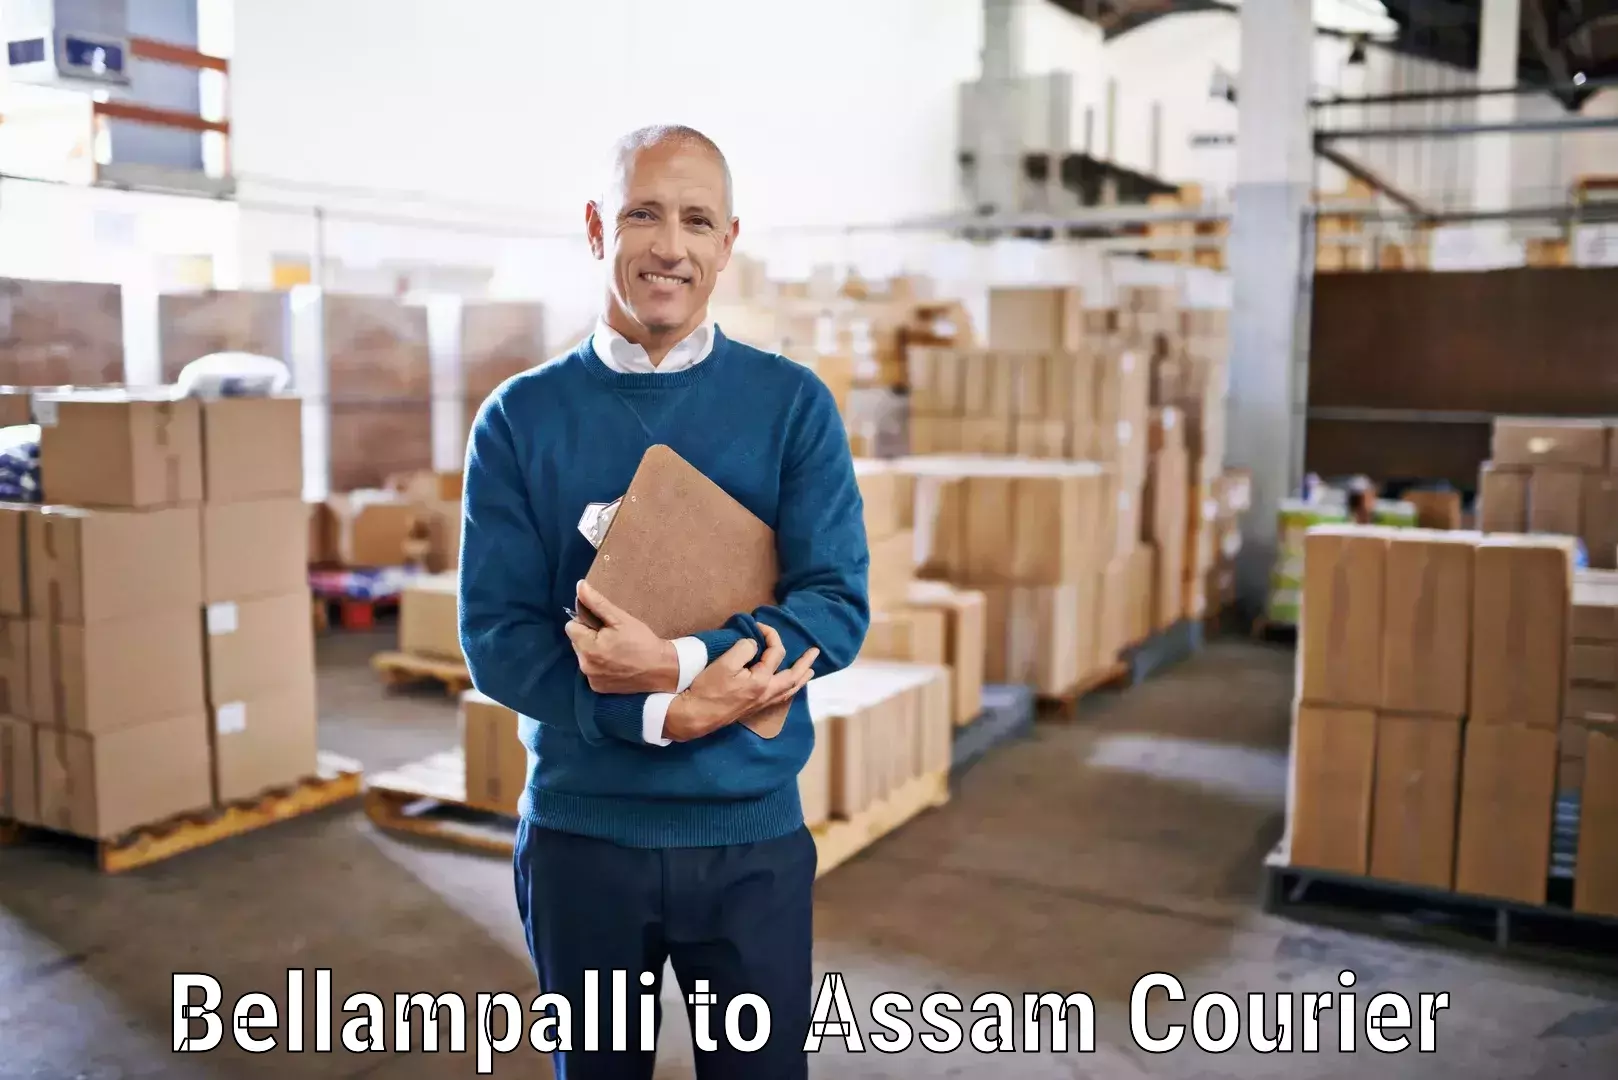 Professional courier handling Bellampalli to Kalgachia